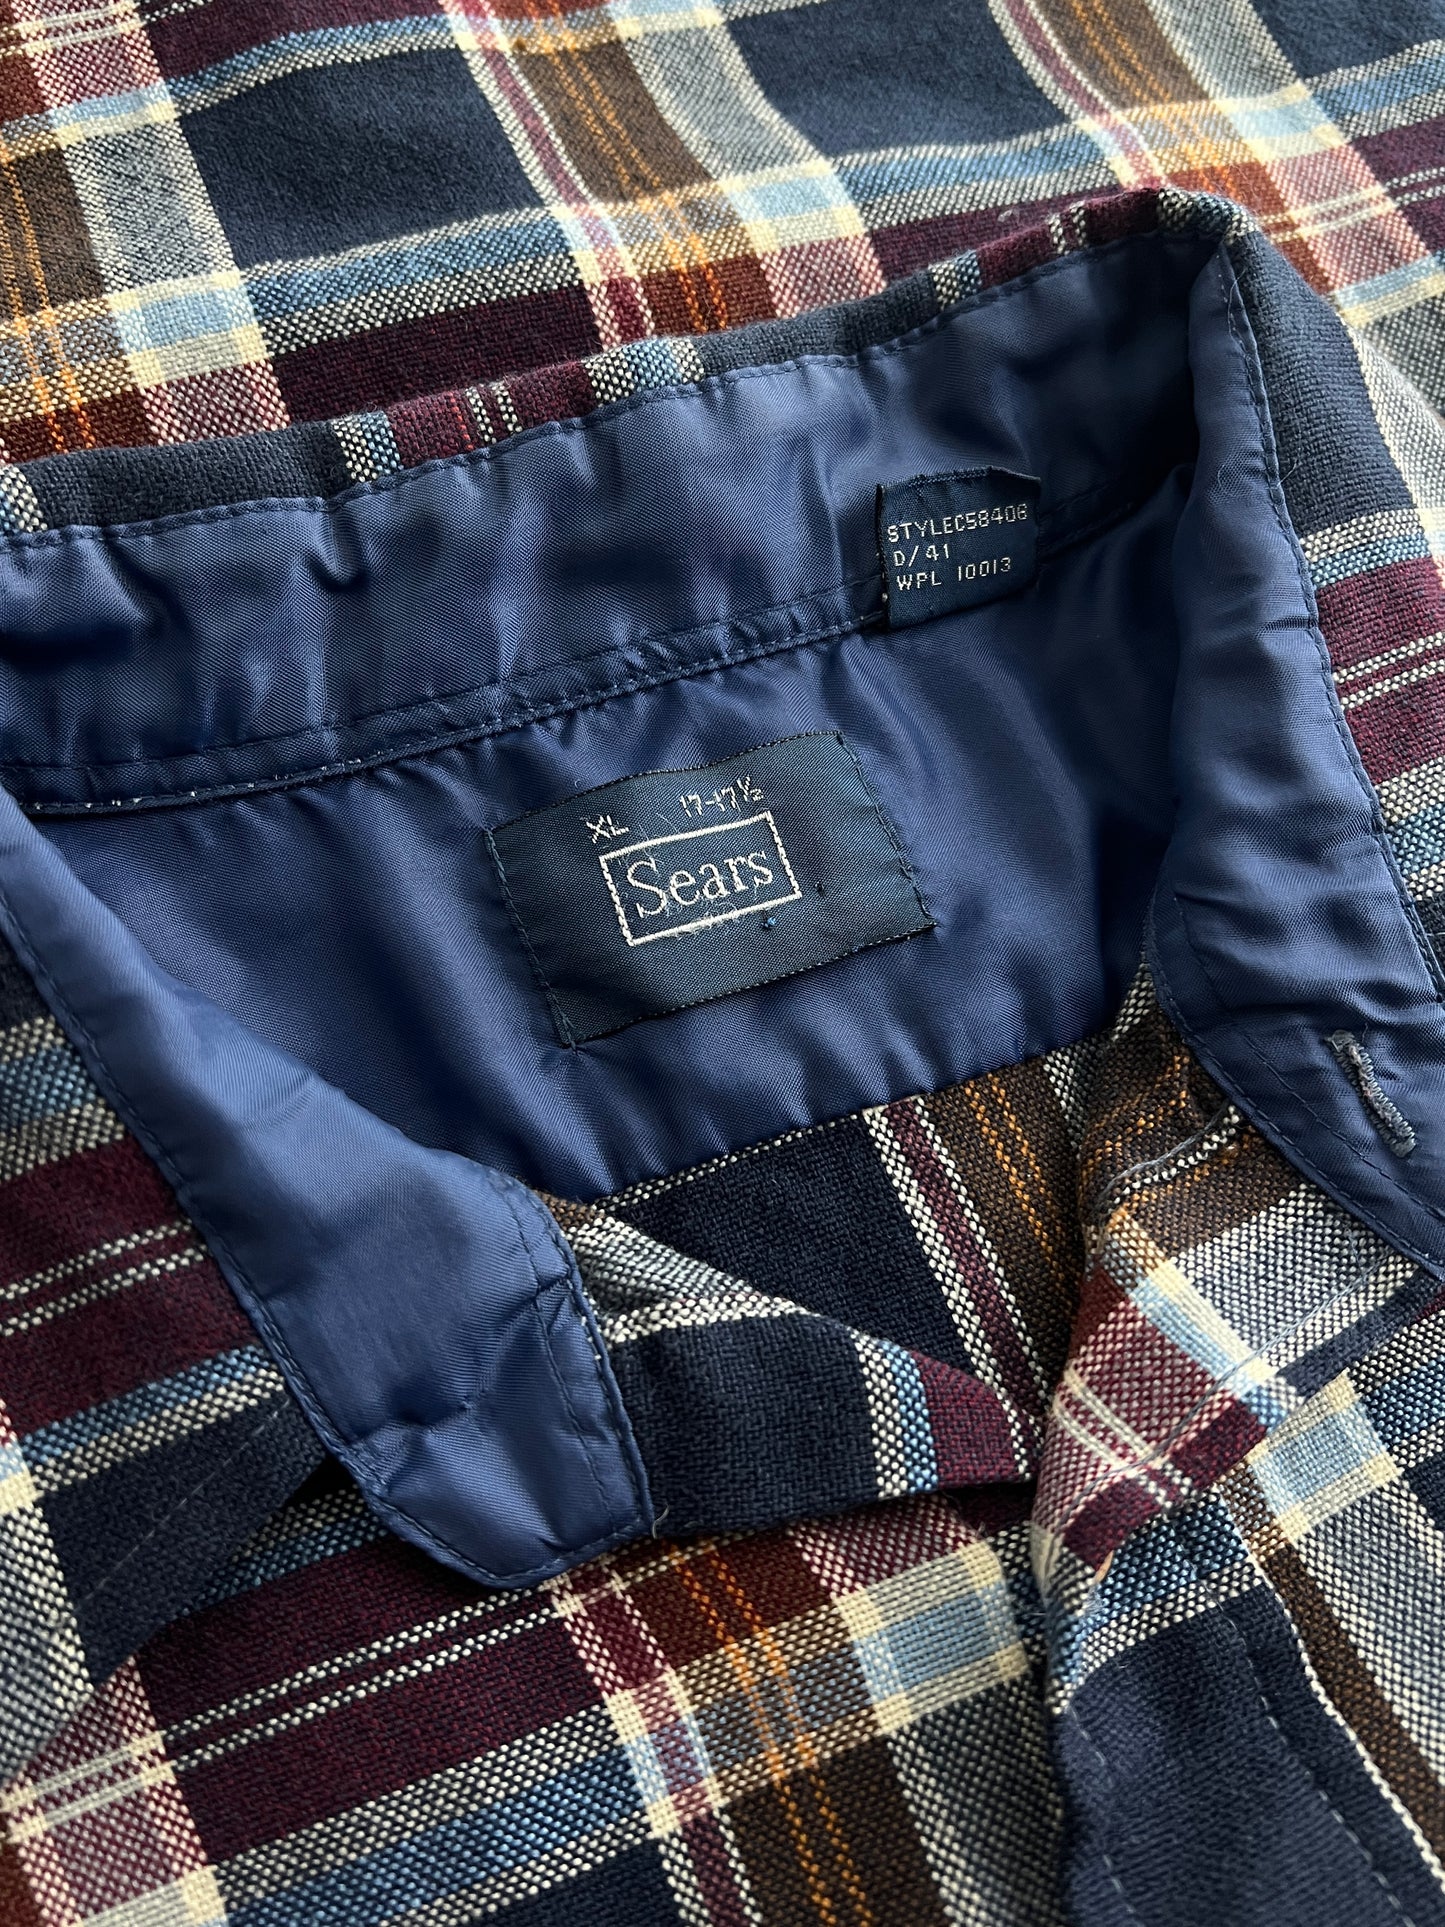 Sears Flannel Shirt [L]